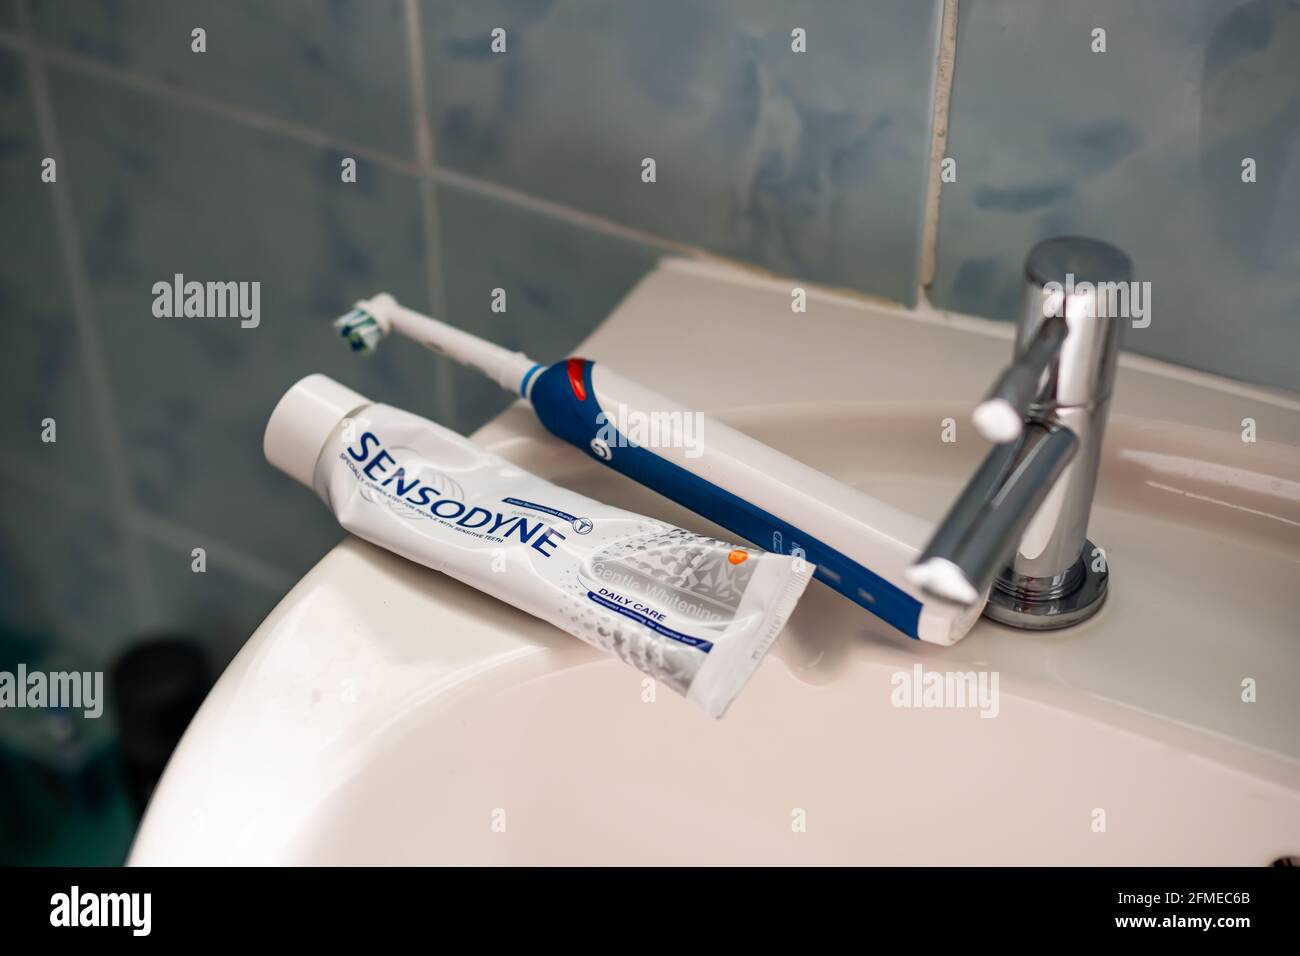 Nahaufnahme und selektiver Fokus auf eine Sensodyne-Röhre Zahnpasta und  eine elektrische Zahnbürste Oral B auf einer weißen Waschbecken im  Badezimmer Stockfotografie - Alamy